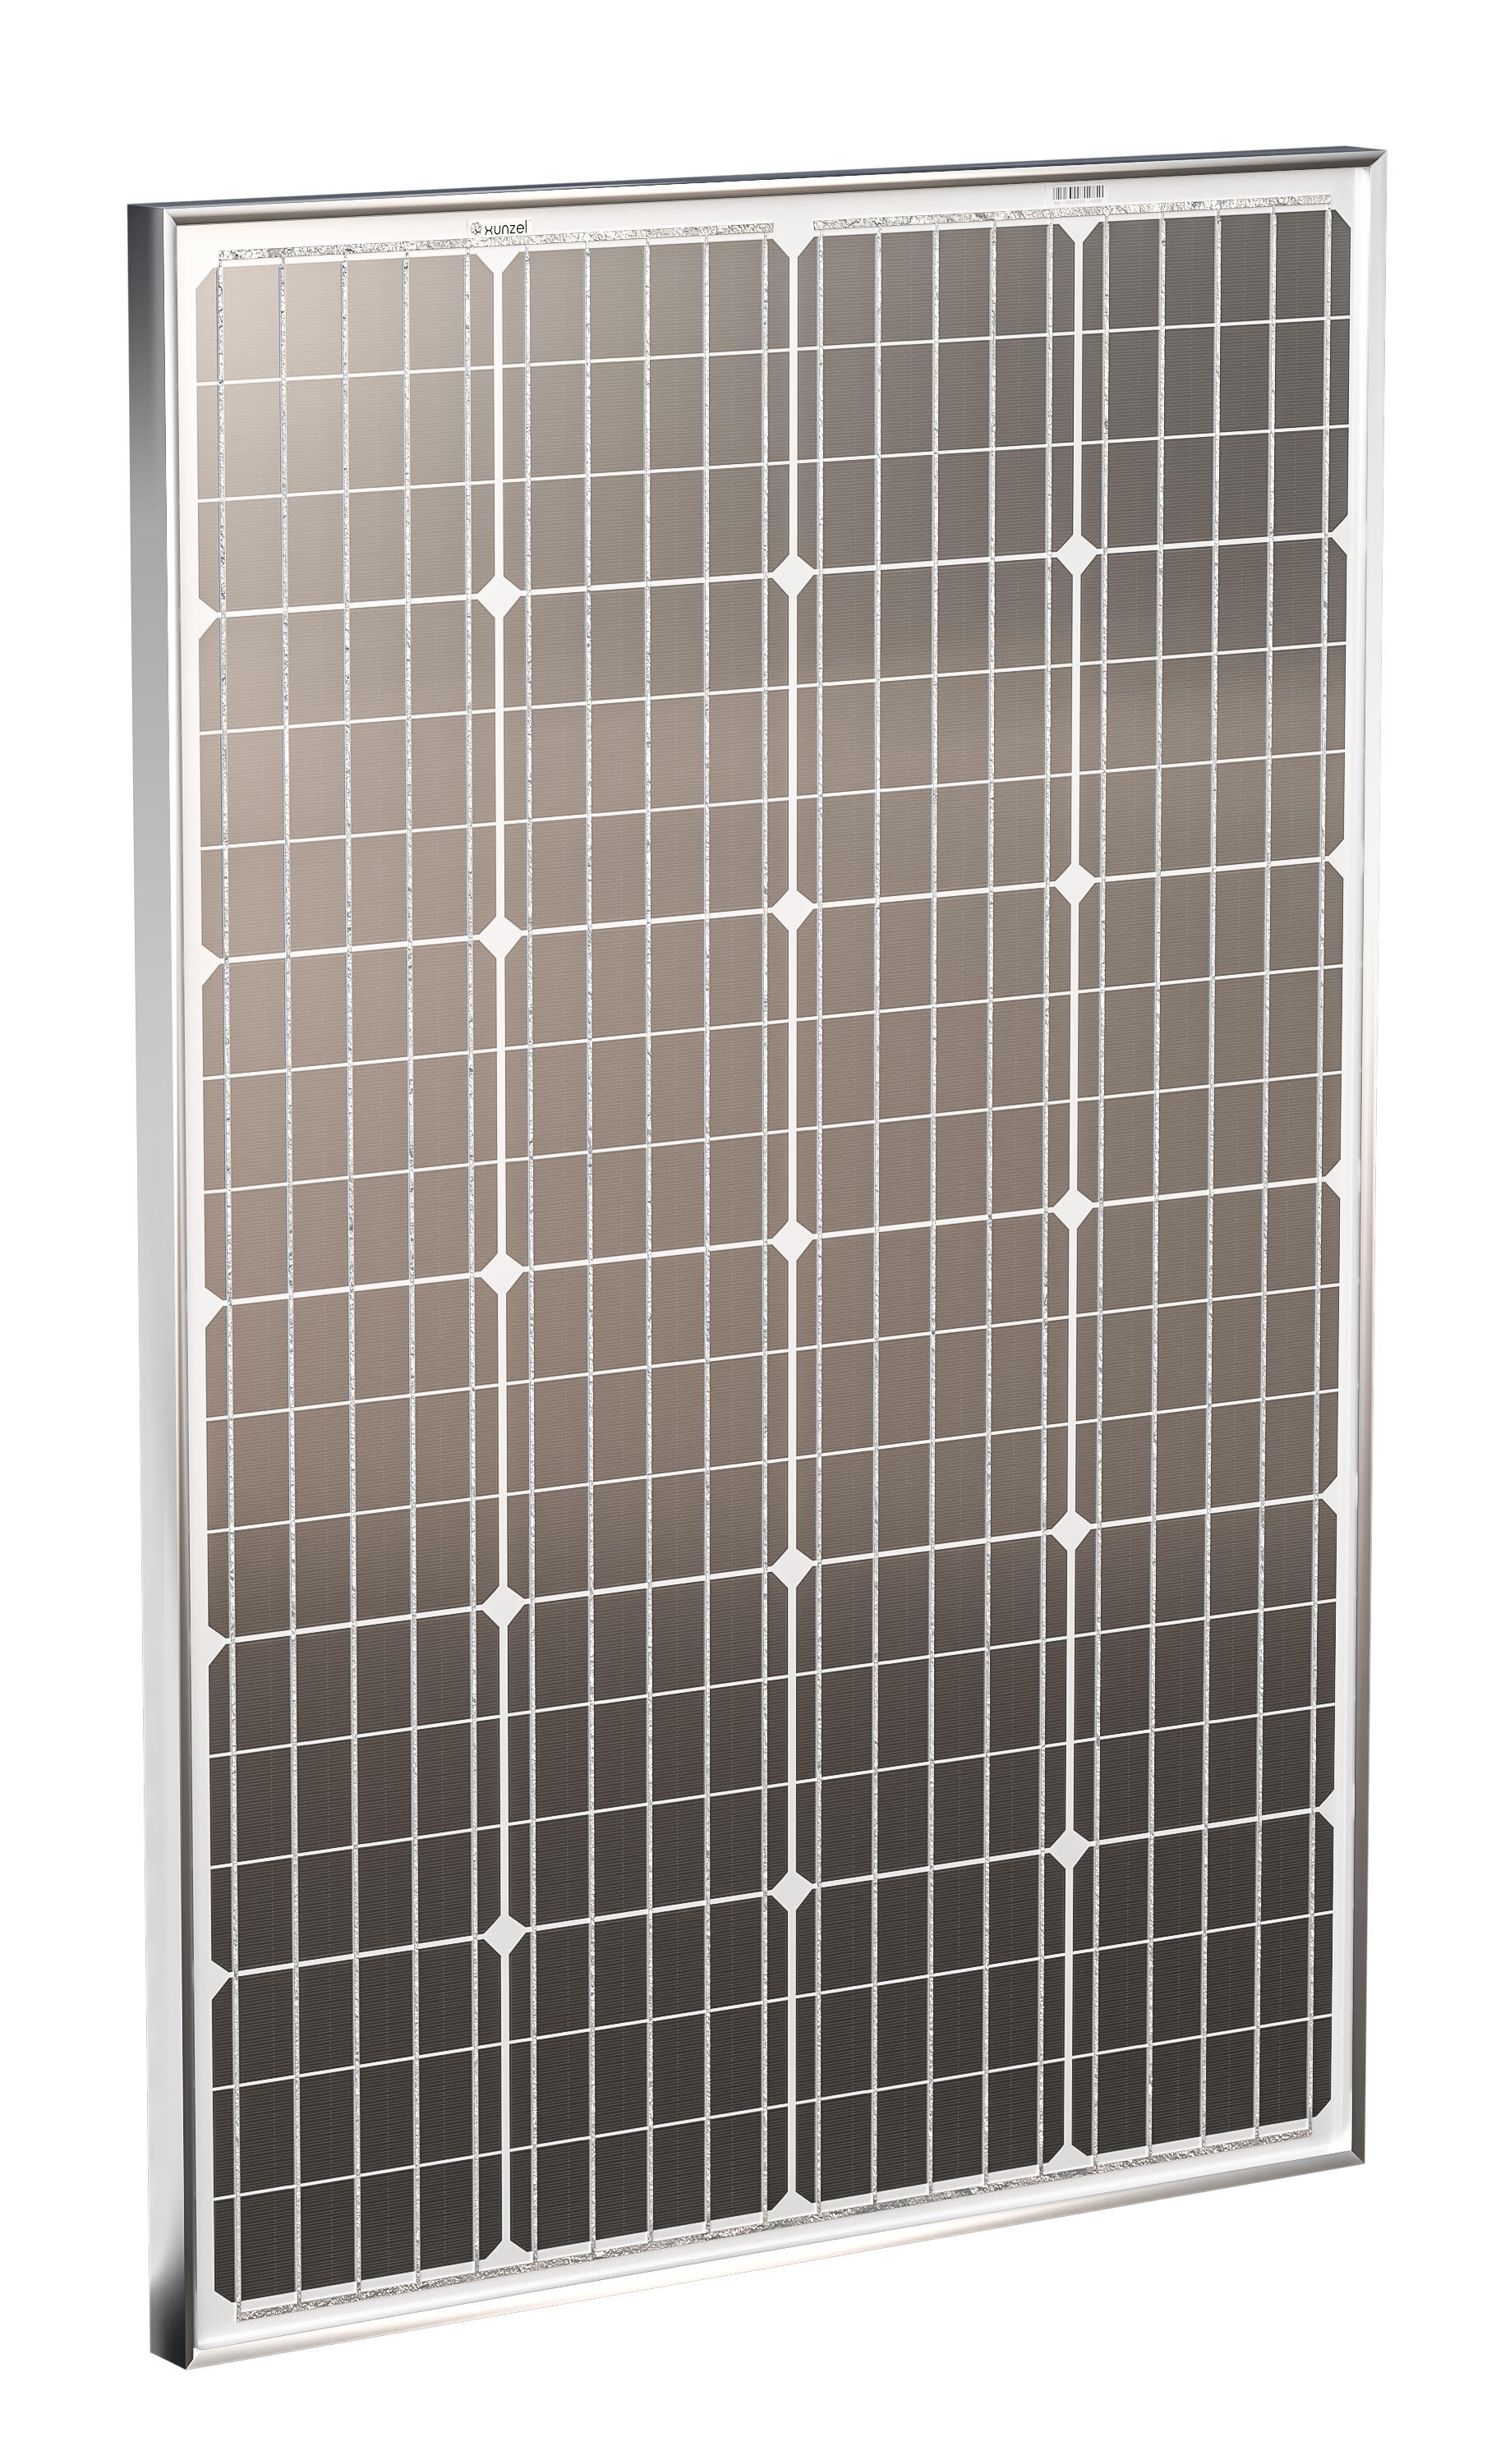 Panel solar fotovoltaico solarpower-xunzel-120w de alta eficiencia con 4m cable